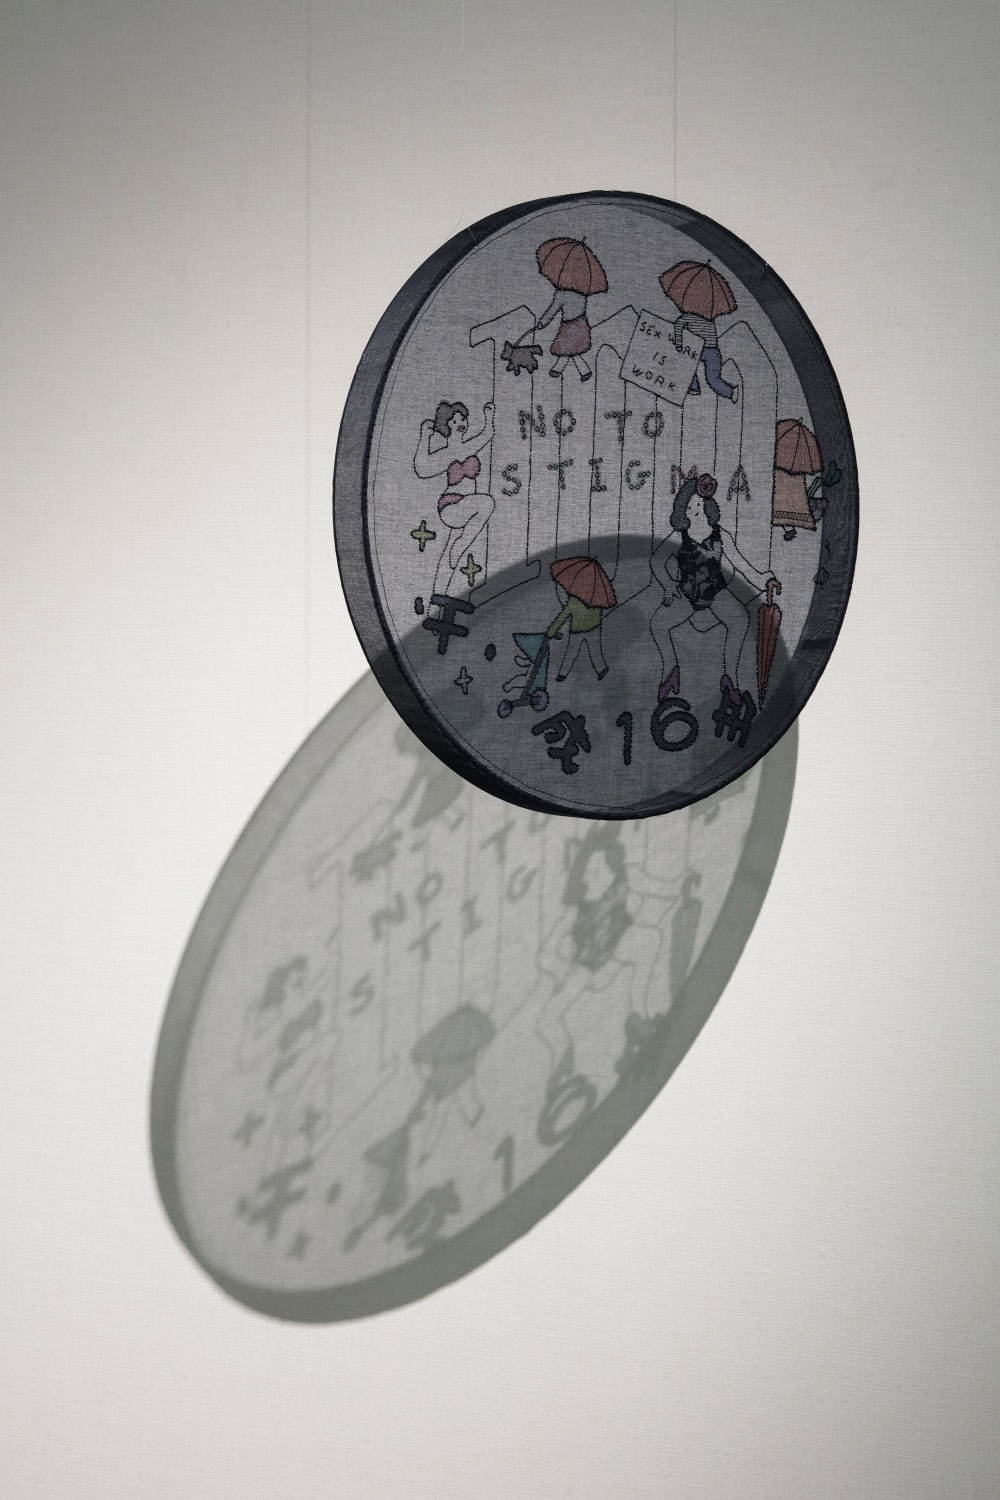 碓井ゆい《shadow of a coin》 2013-2018、「shadow work」小山市立車屋美術館、栃木
Photo: Shinya Kigure